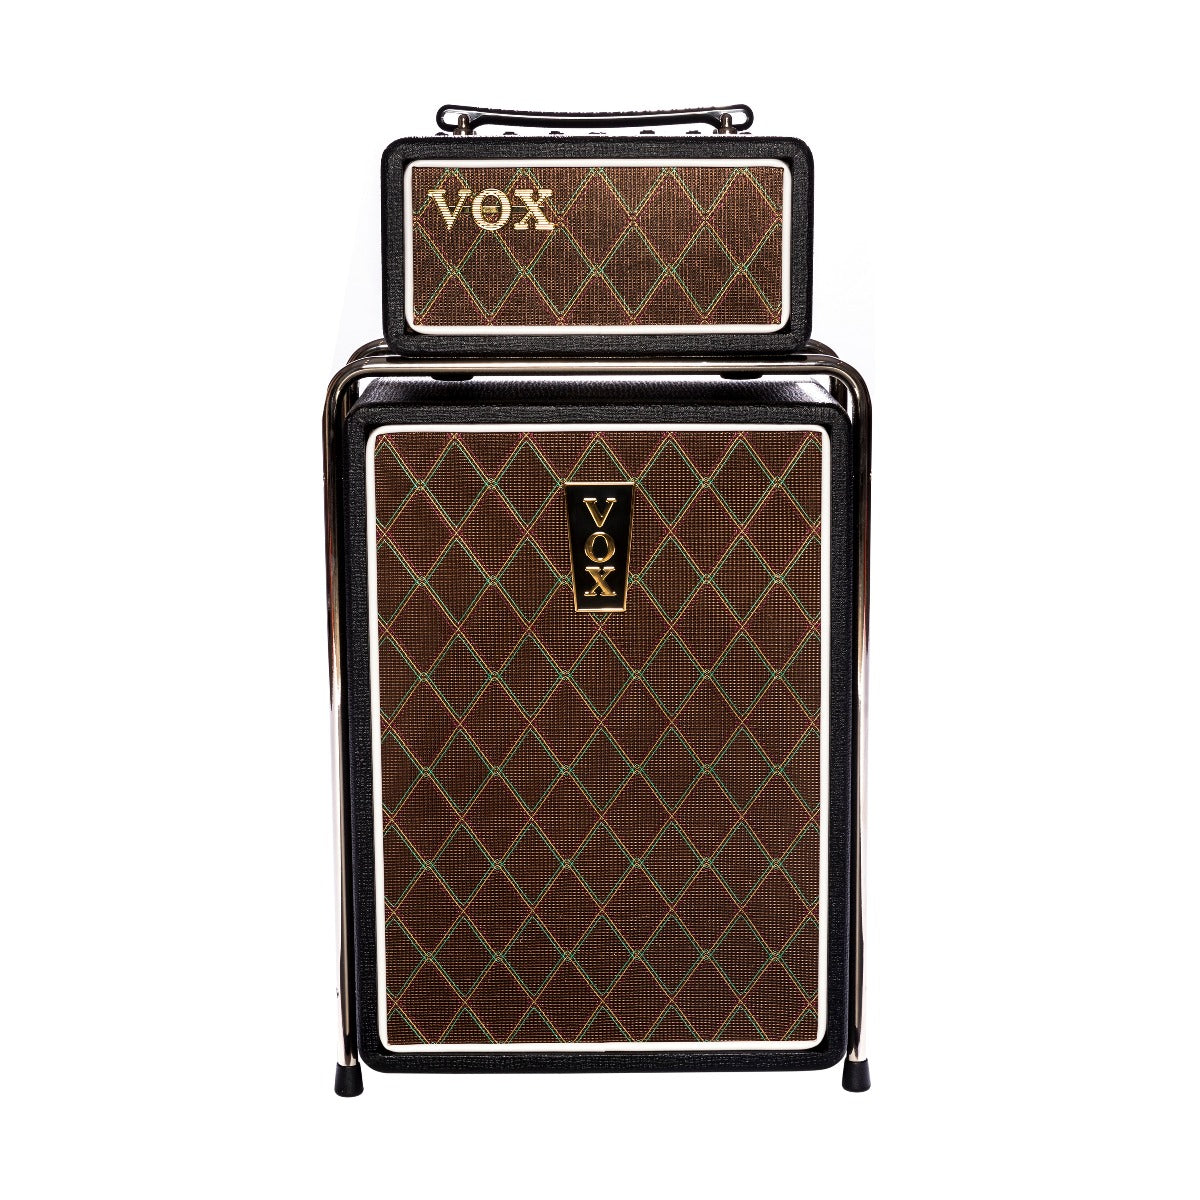 VOX Mini SuperBeatle 25 Guitar Amplifier